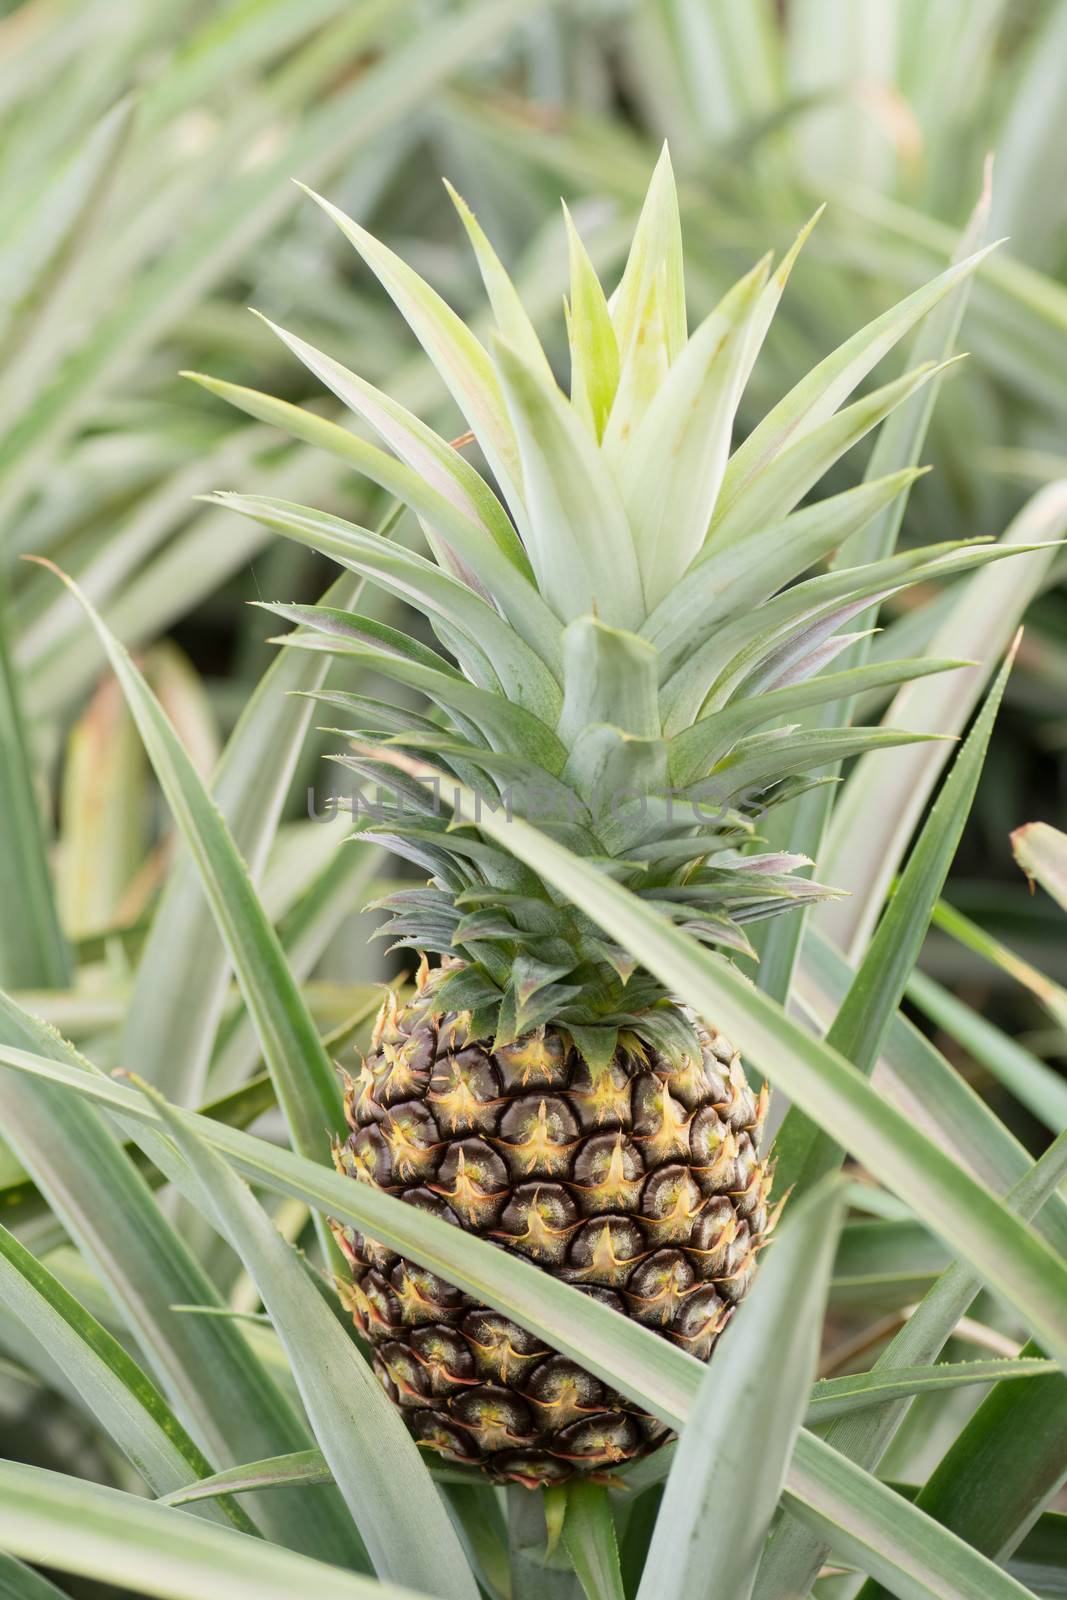 Pineapple farm by elwynn